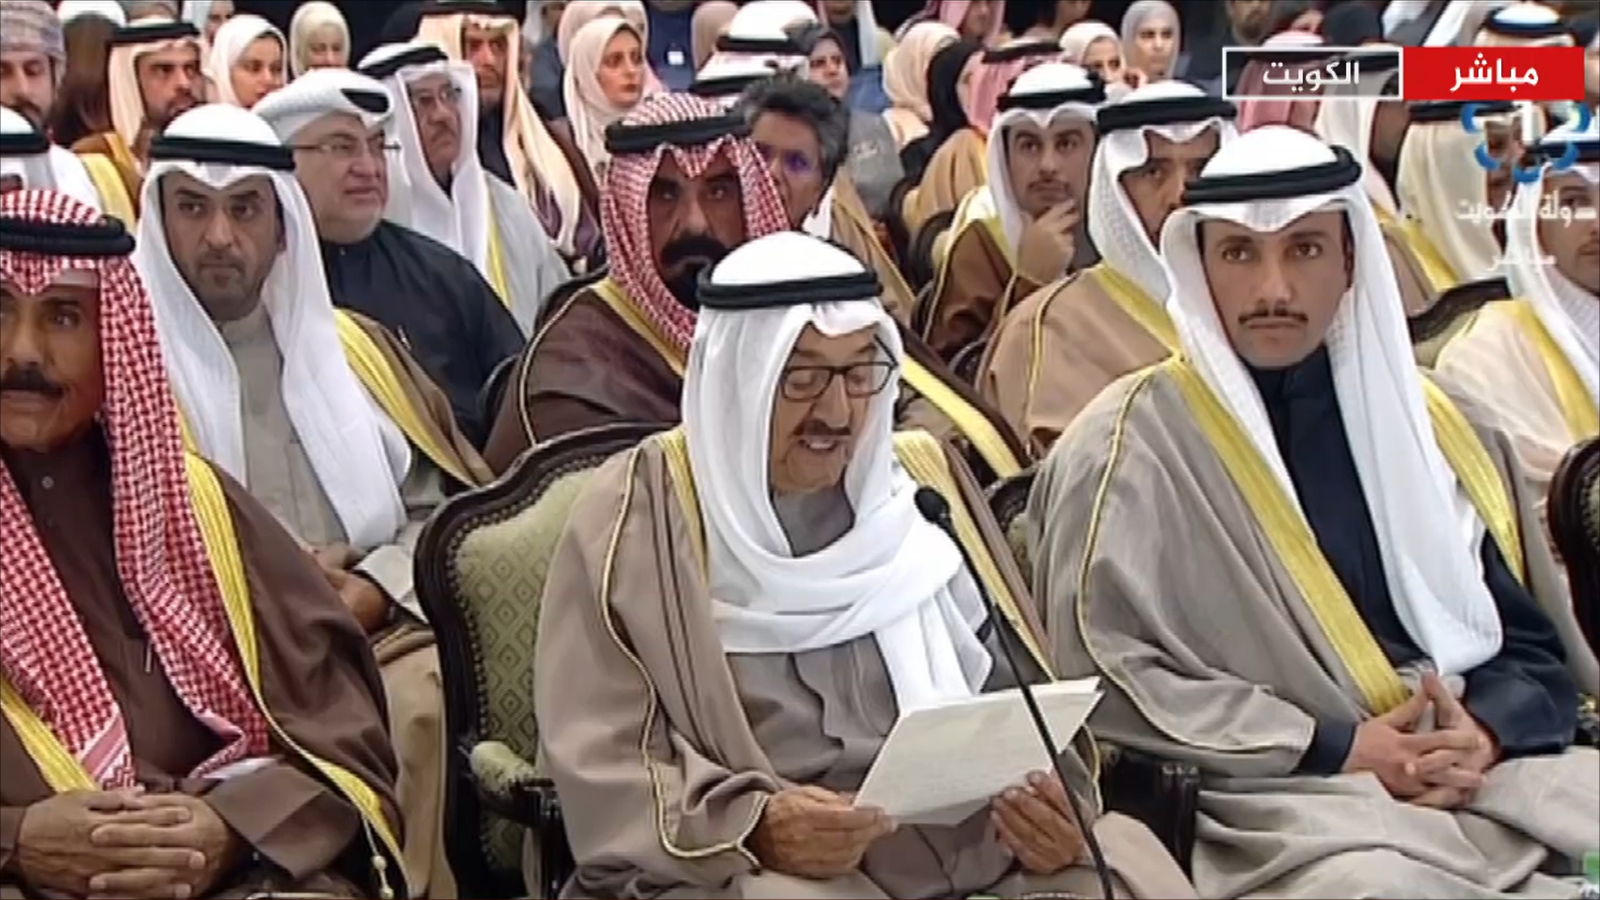  海合会在科威特召开第11次议会领导人会议 [半岛电视台]

